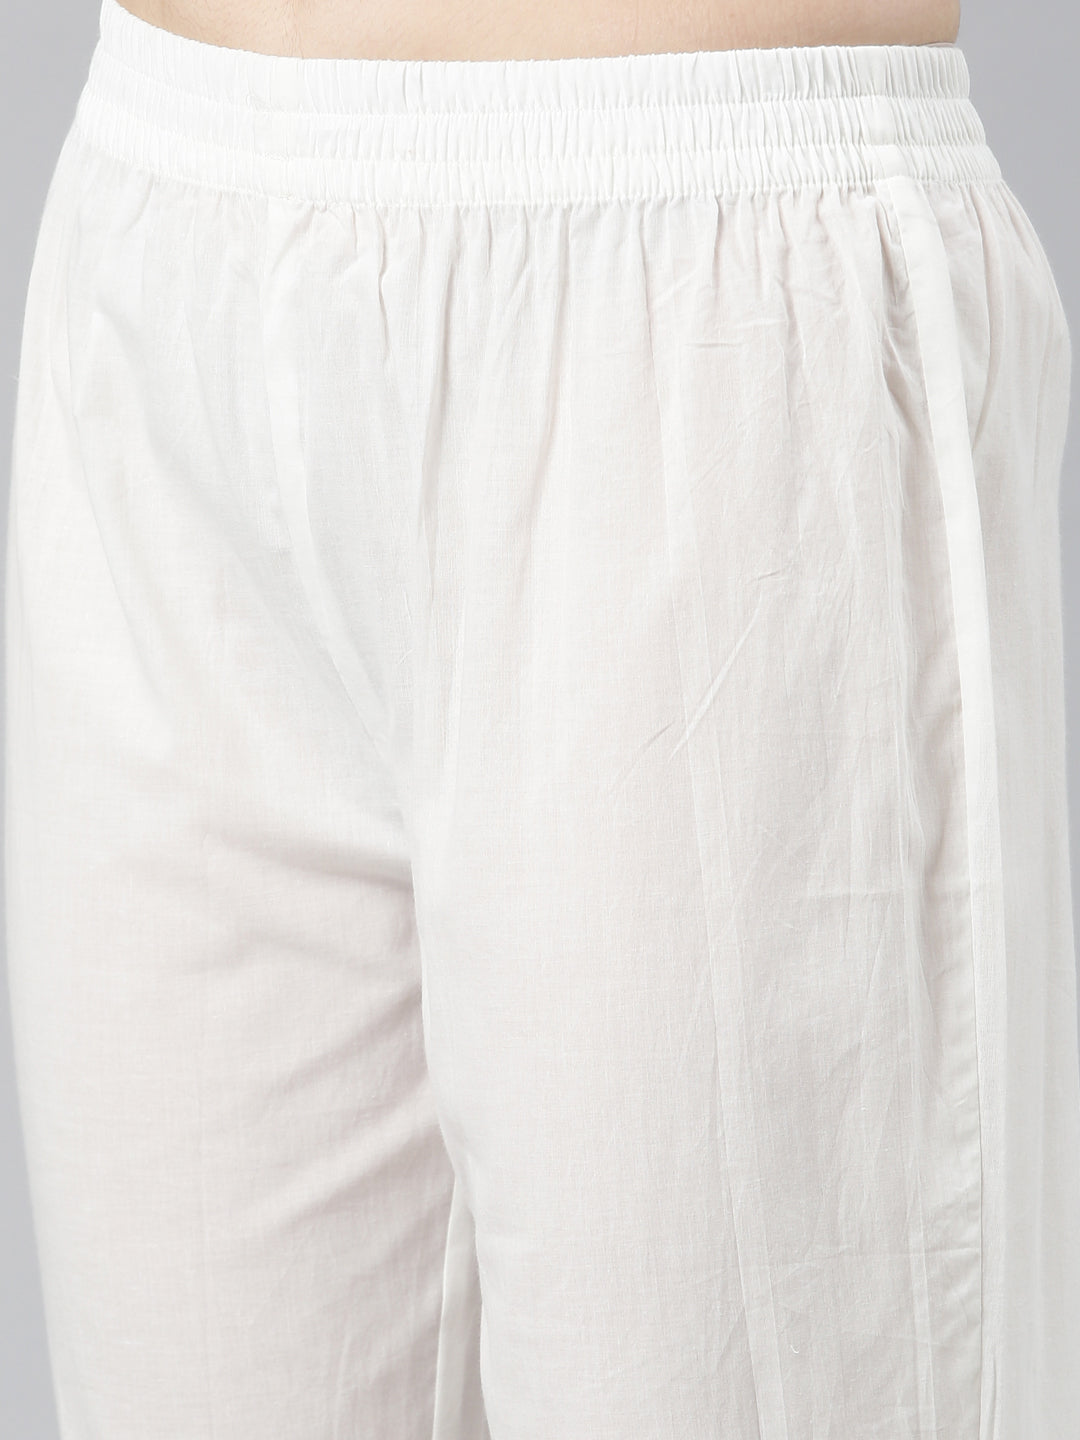 Neerus White Regular Straight Printed Kurta And Trousers With Dupatta